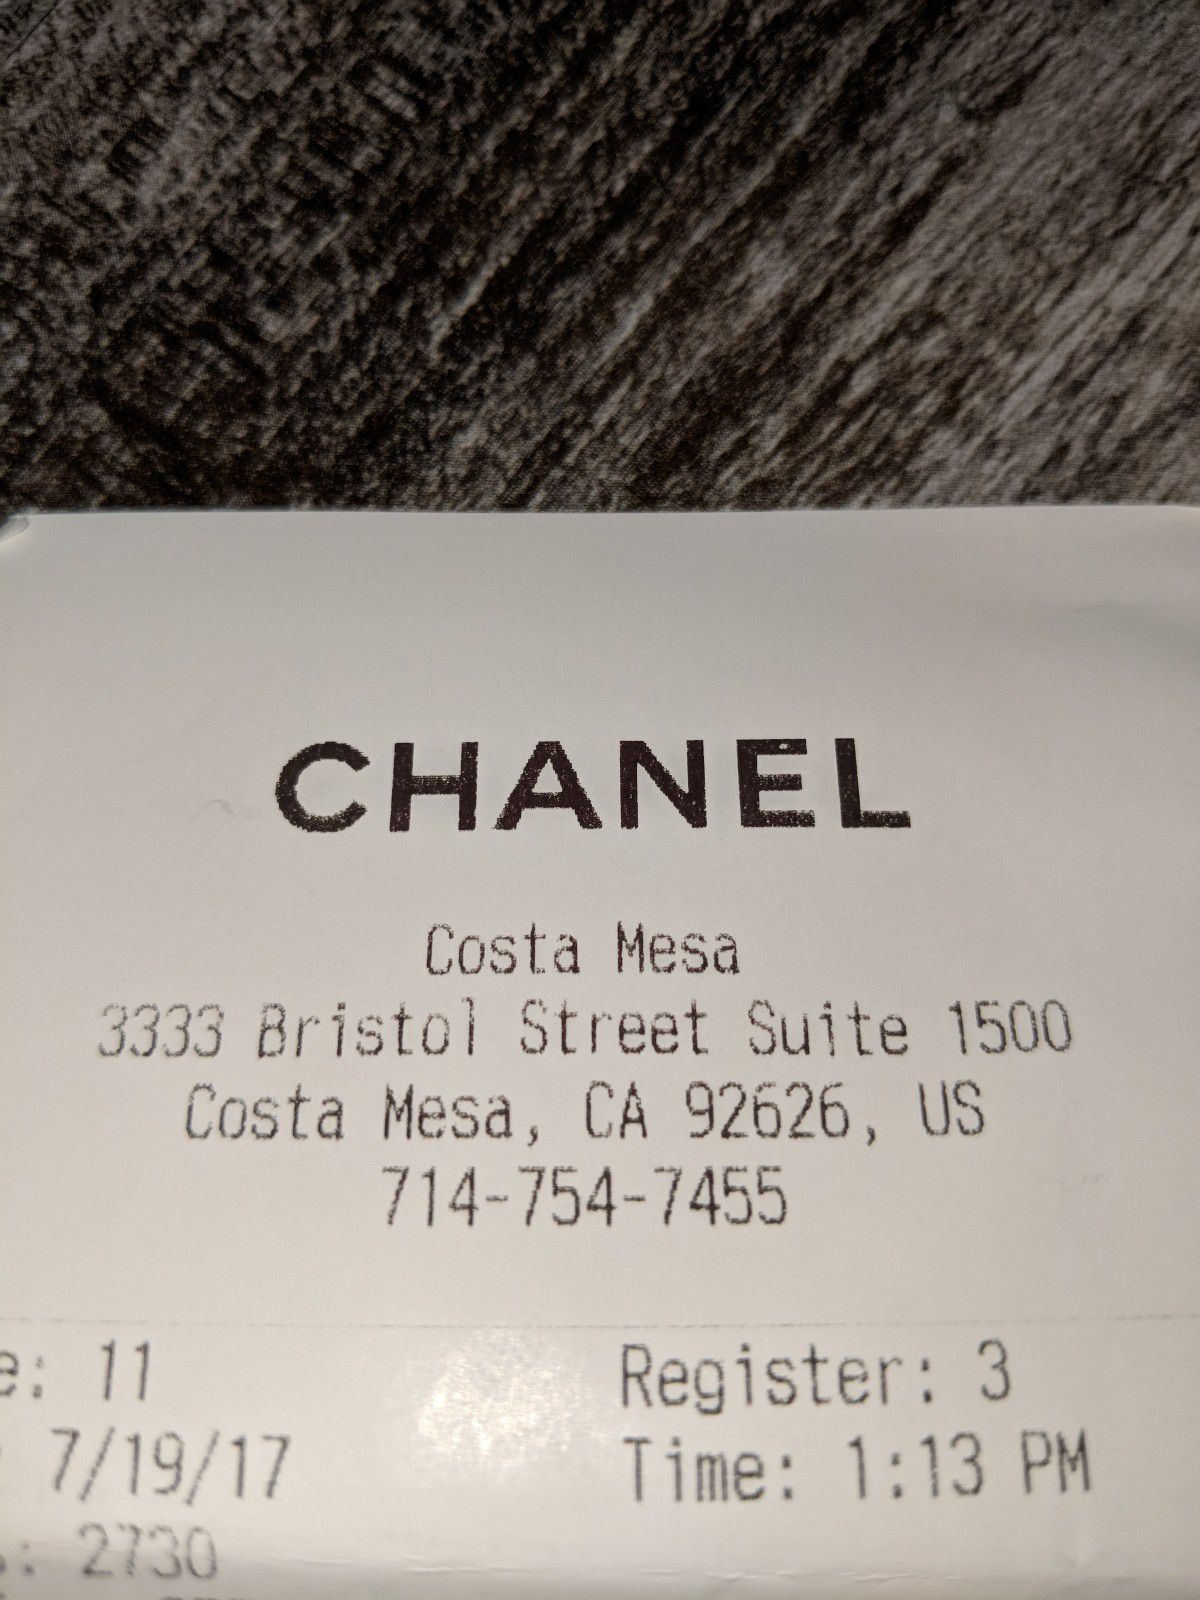 Chanel 2018 Button Up Large Hobo - Black Hobos, Handbags - CHA414249